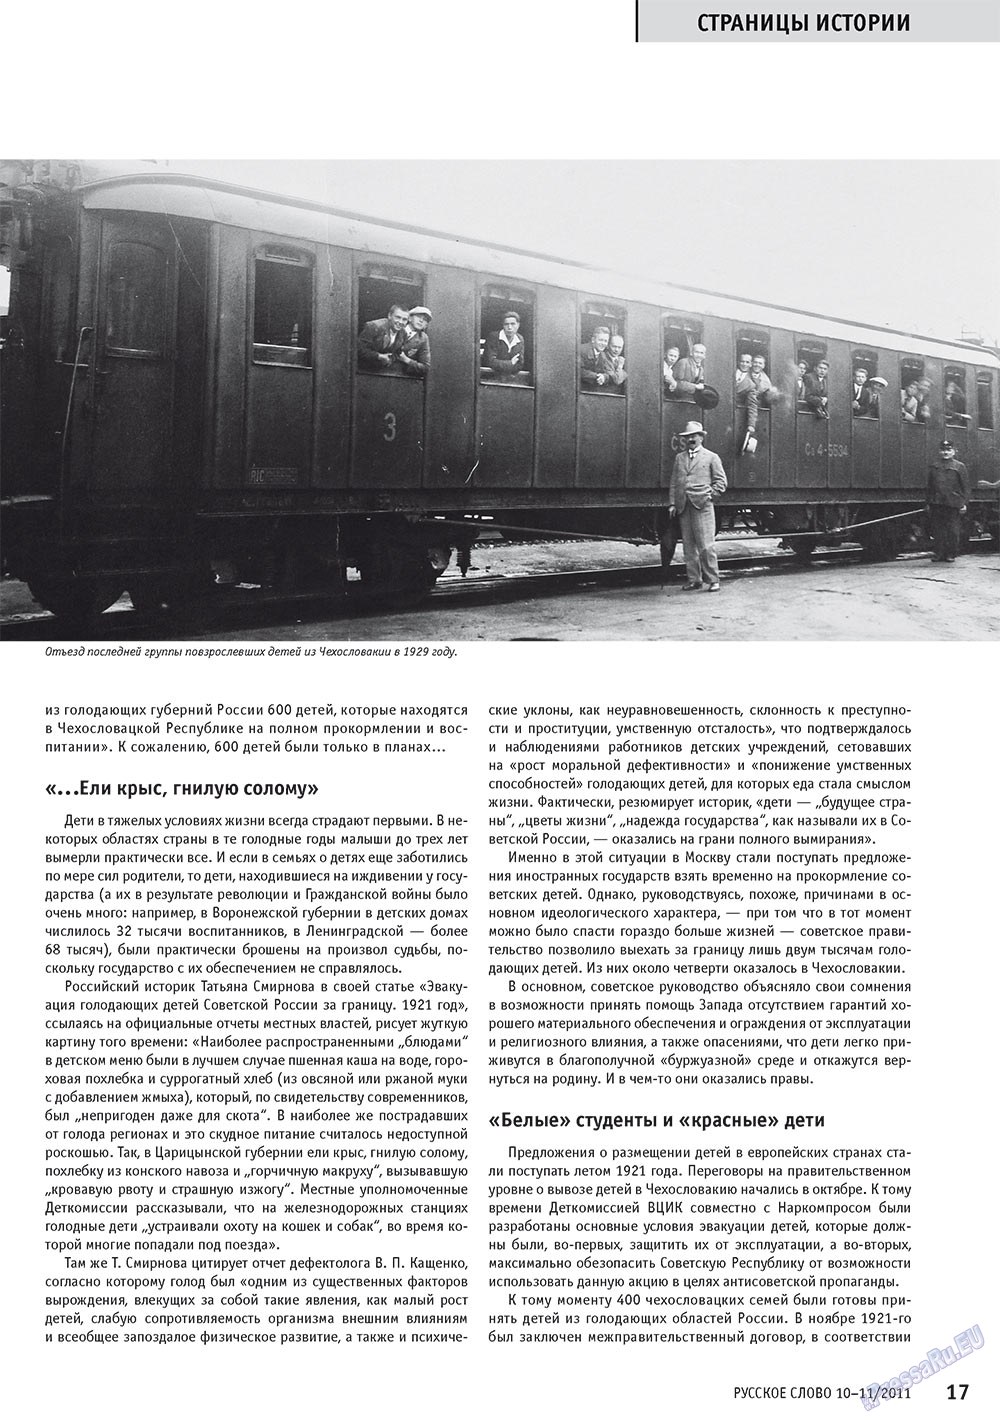 Русское слово, журнал. 2011 №10 стр.19